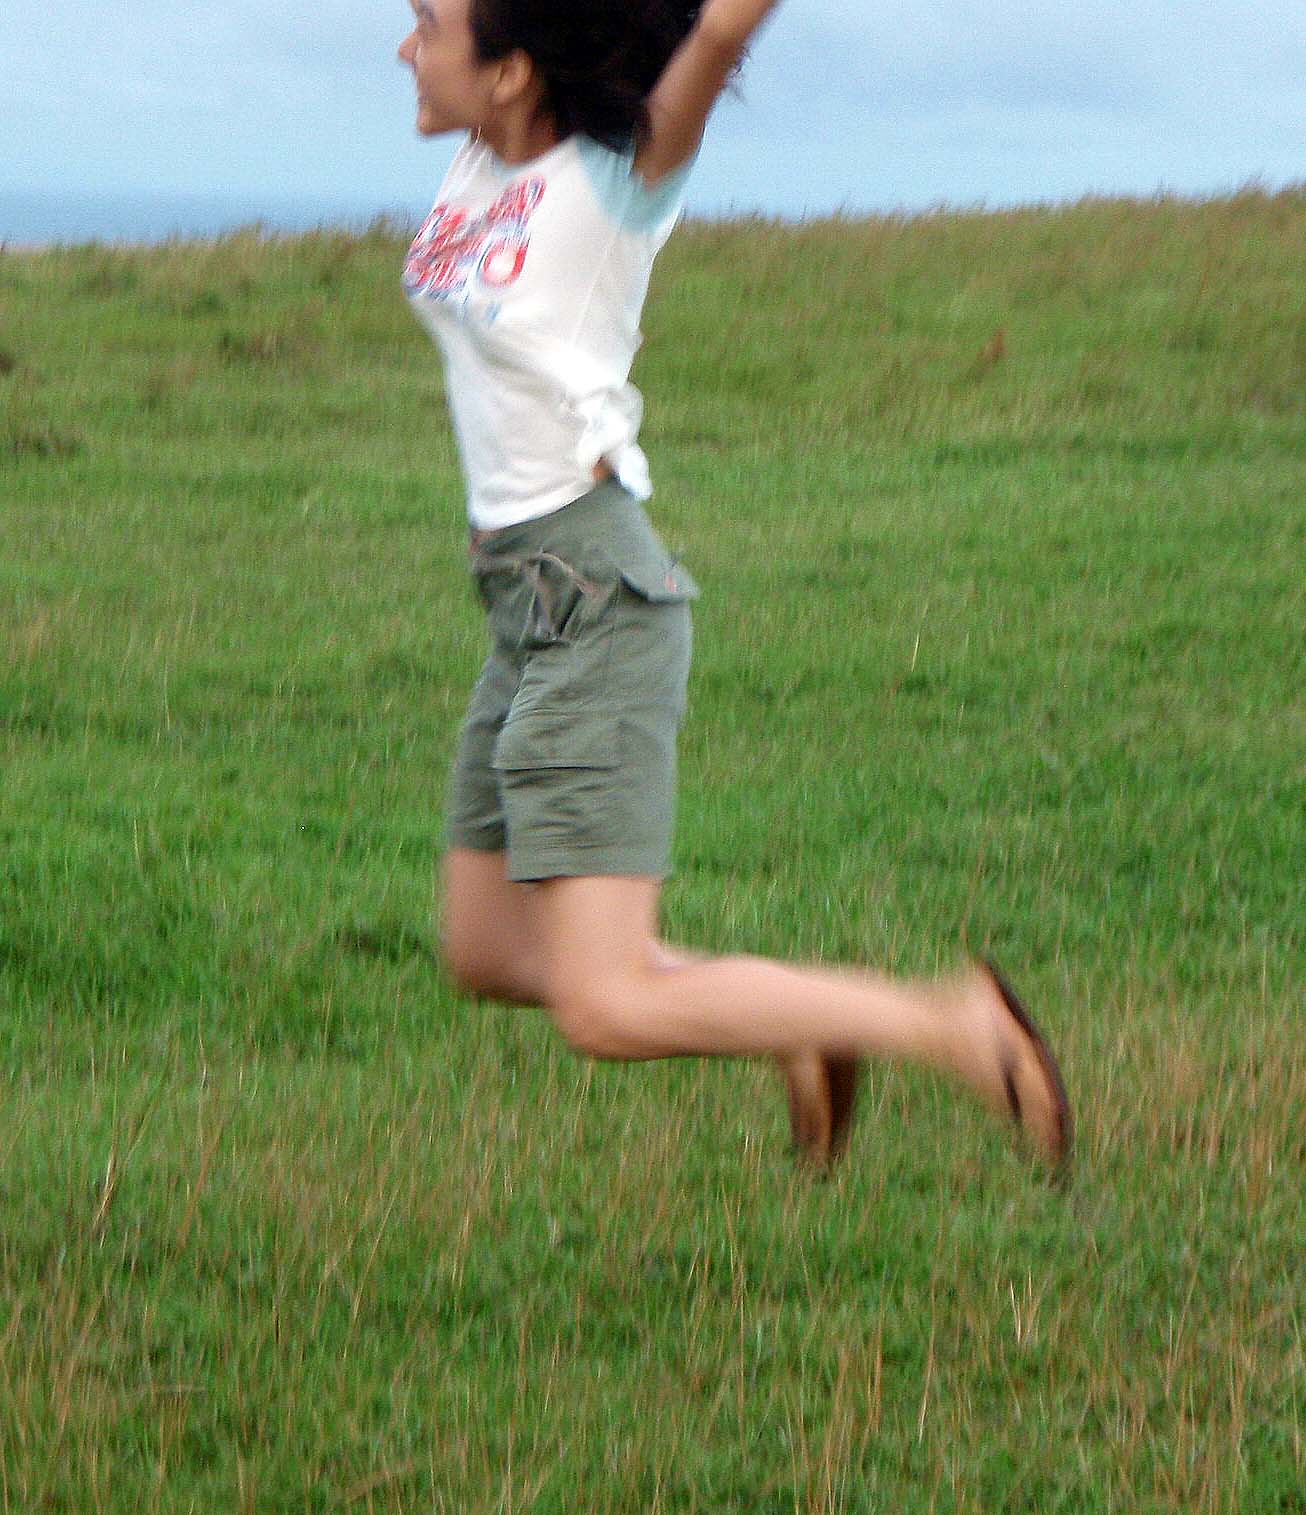 Sophia leaping.jpg